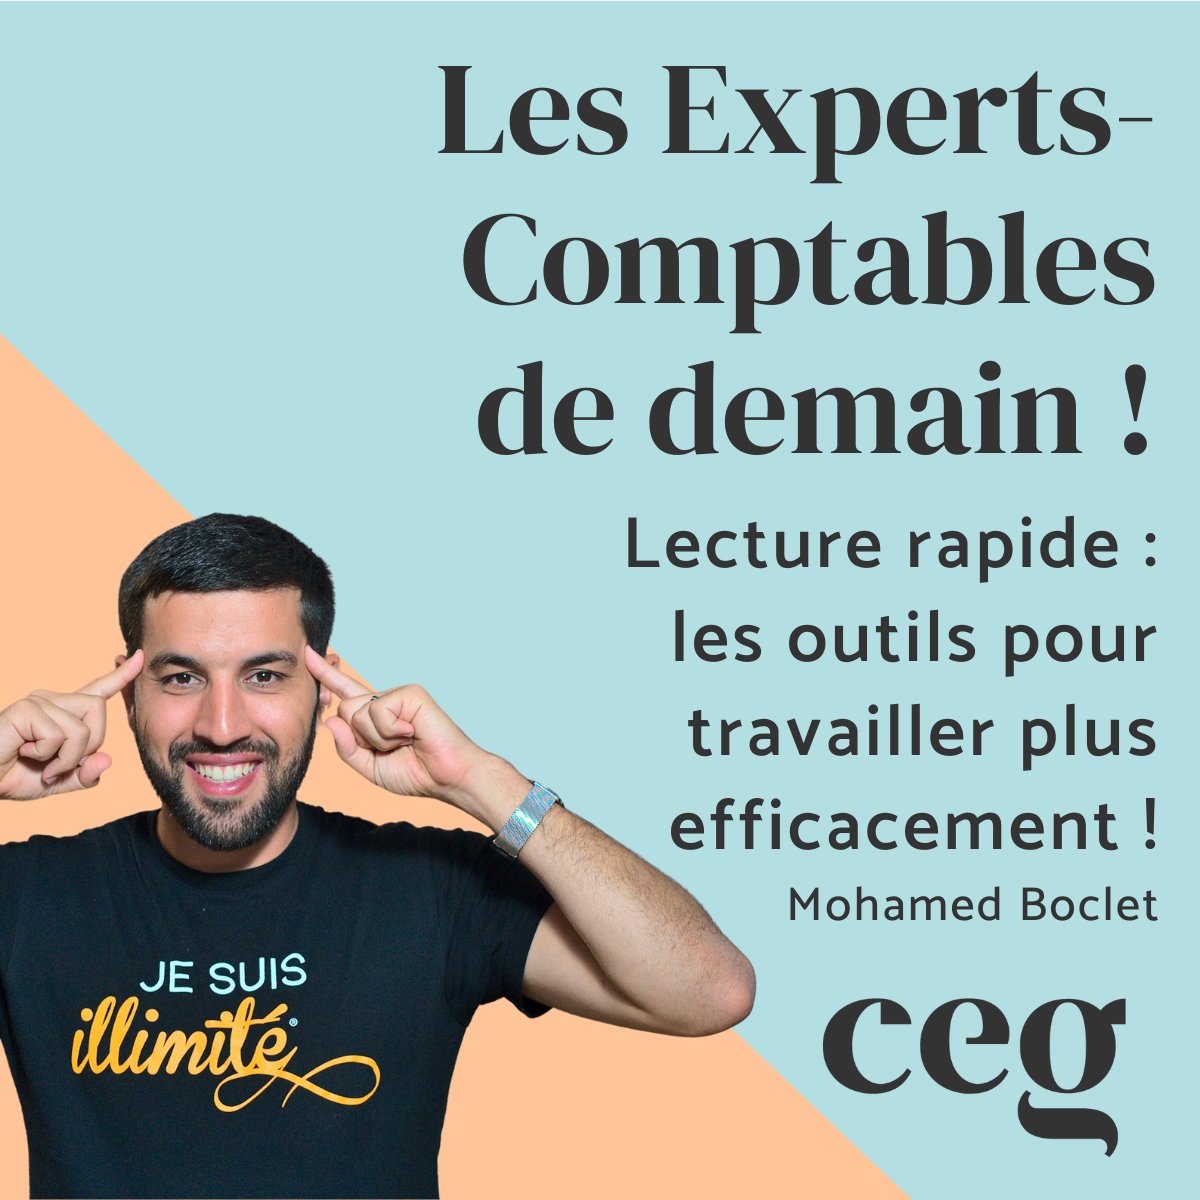 Vous souhaitez booster votre performance ? Ecoutez ce dernier épisode du #podcast @Le_CEG ! @mohamedboclet, vice-champion du monde de #lecturerapide, nous livre quelques pépites pour exploiter toutes les capacités de notre #cerveau. 👉audmns.com/AUzieXI
#expertisecomptable